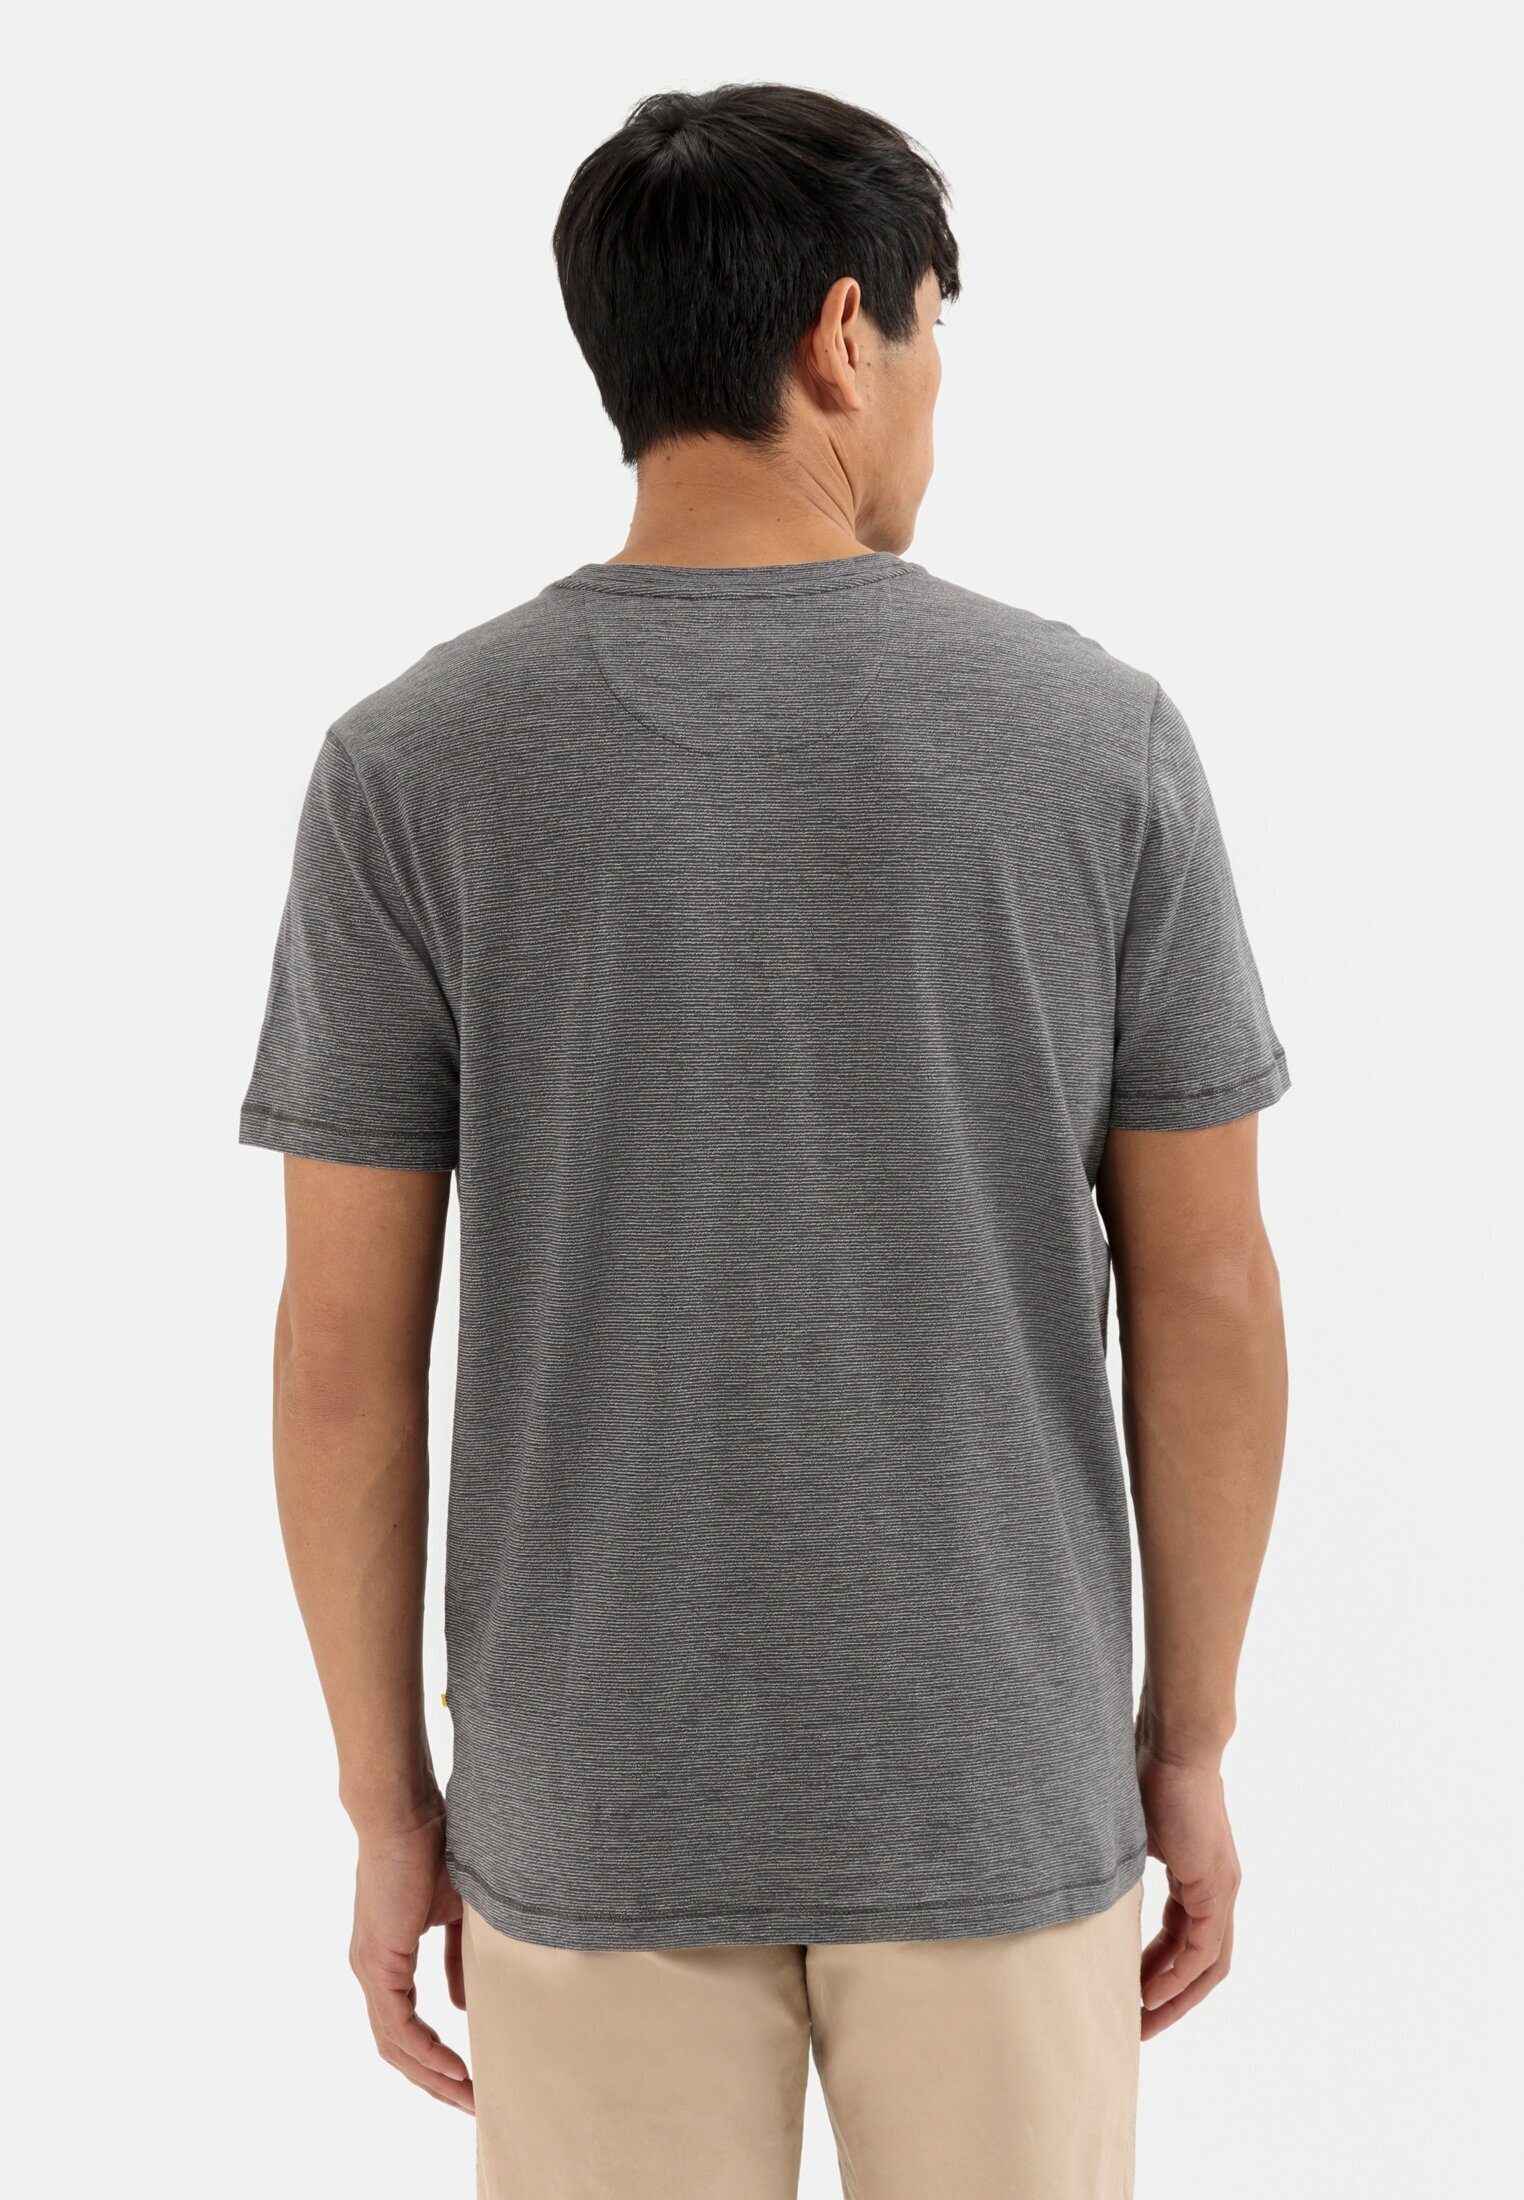 camel feinem Streifenmuster T-Shirt mit Grau active